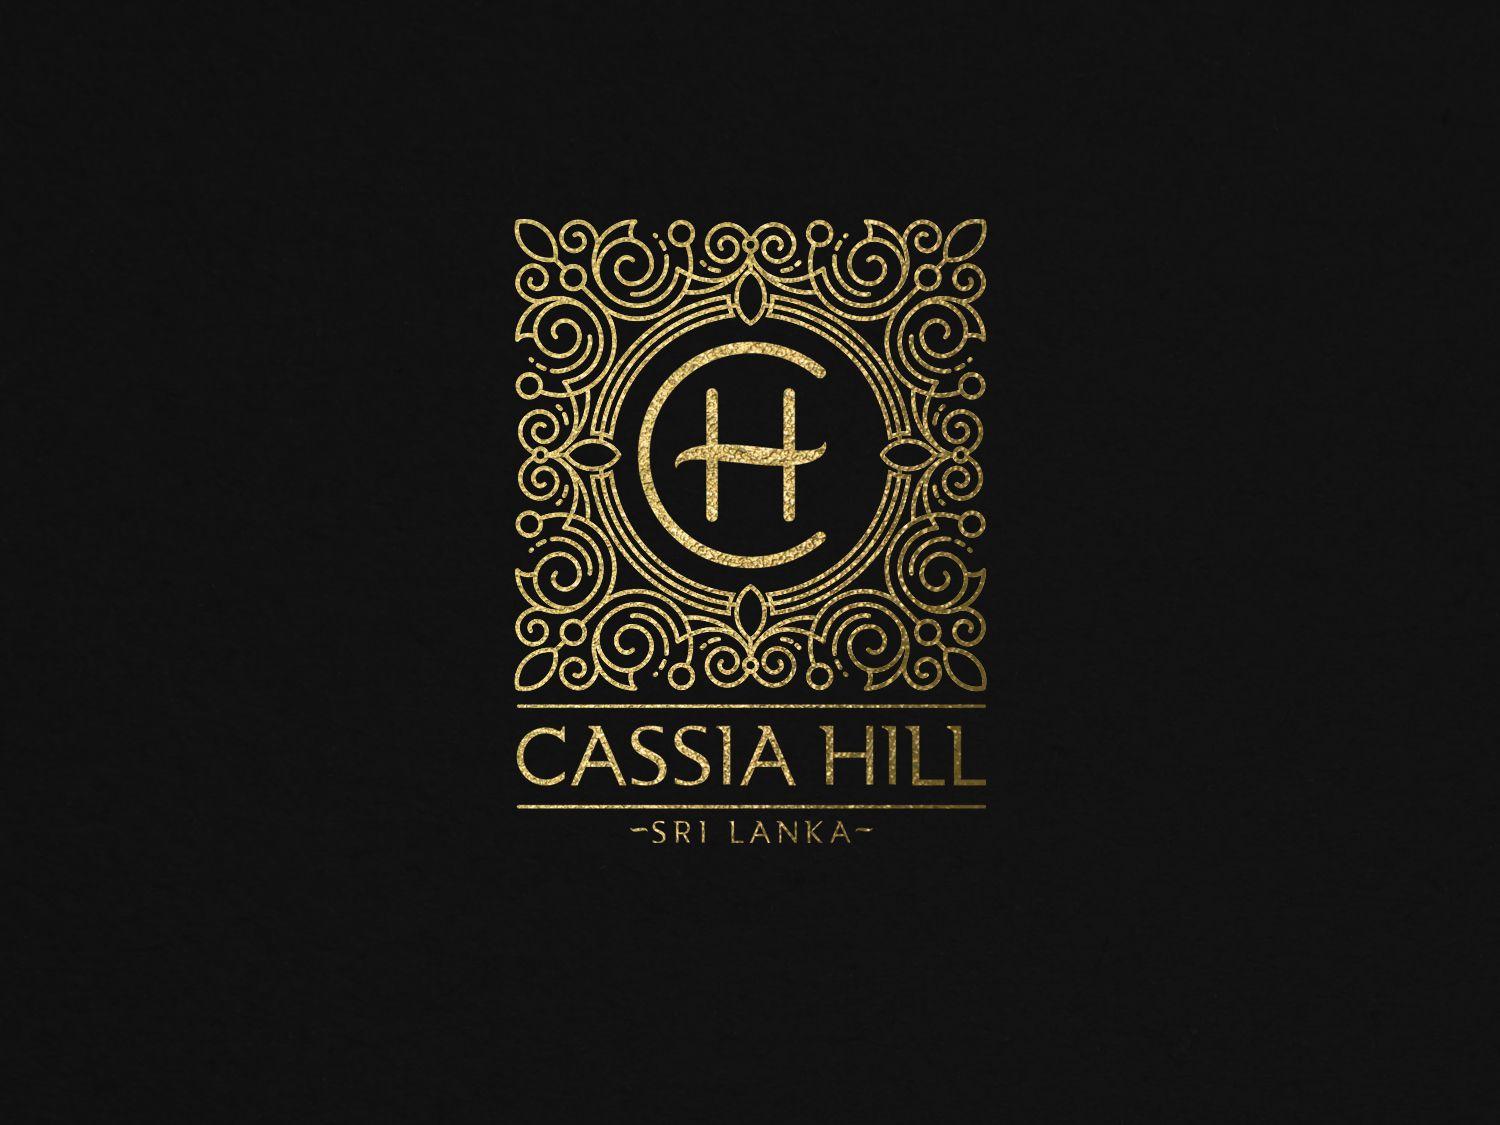 Colonial Logo - Logo Design. 'Cassia Hill Colonial' design project